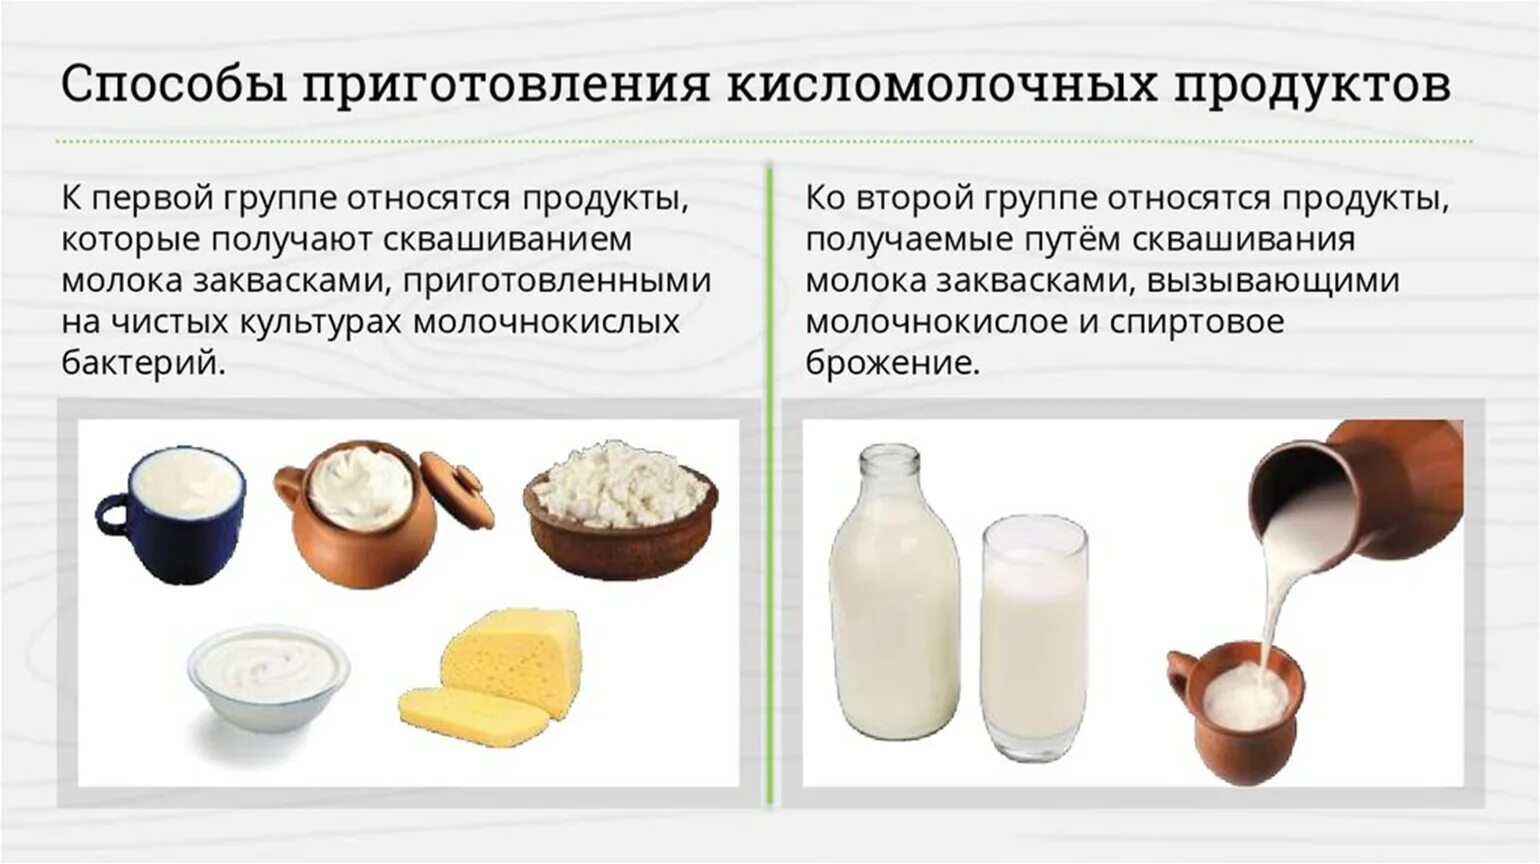 Какие продукты приводят молоко. Методы приготовления молочнокислых продуктов.. Кисломолочные продукты продукты. Классификация кисломолочных продуктов. Ассортимент молочных и кисломолочных продуктов.